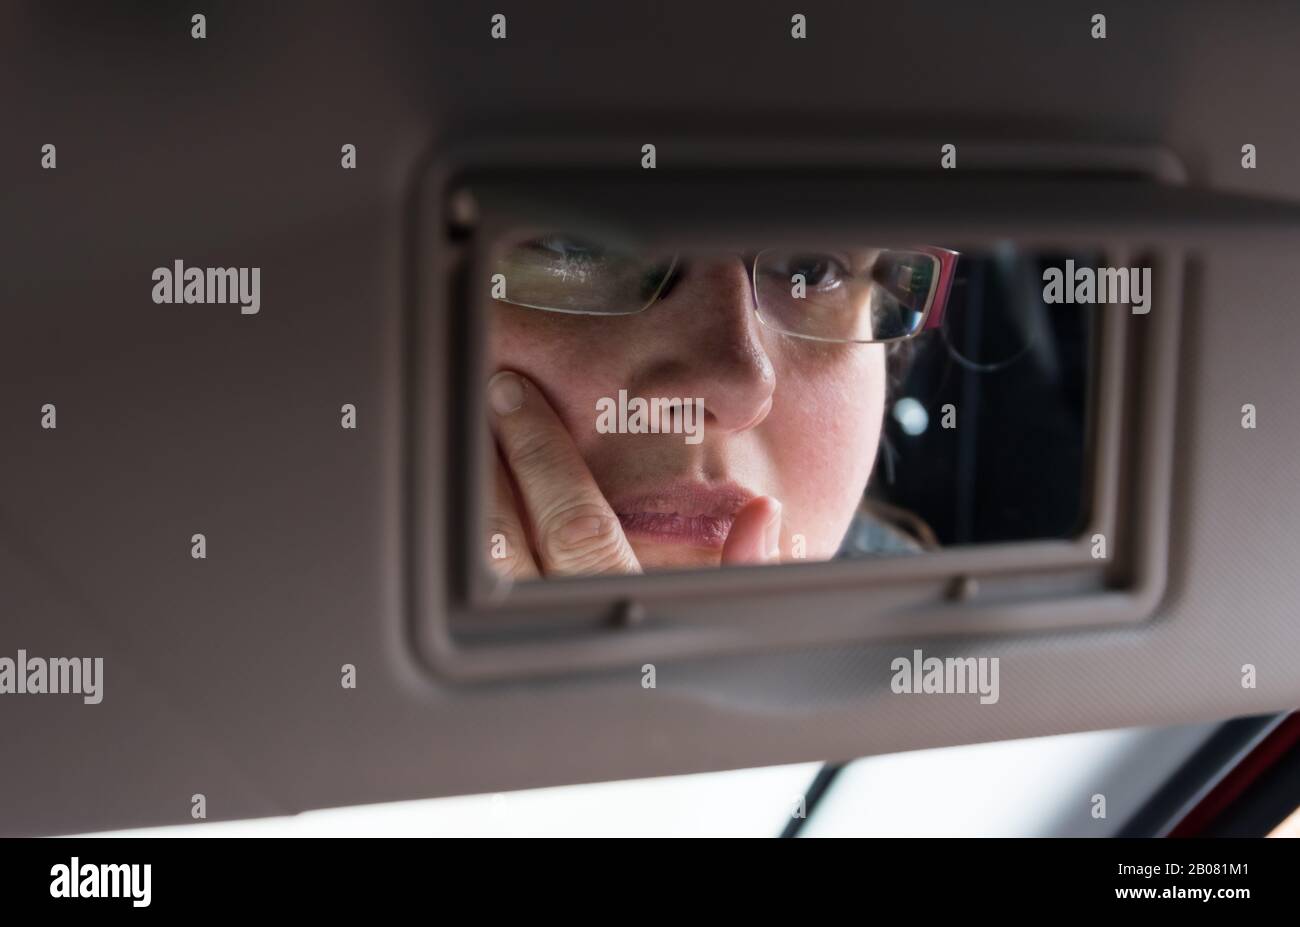 Selbstreflektion Konzept. Frau, die in einem Spiegel in der Sonnenblende eines Autos auf sich selbst blickt und denkt. Denkzeitkonzept. Konzept der Selbstreflexion. Stockfoto